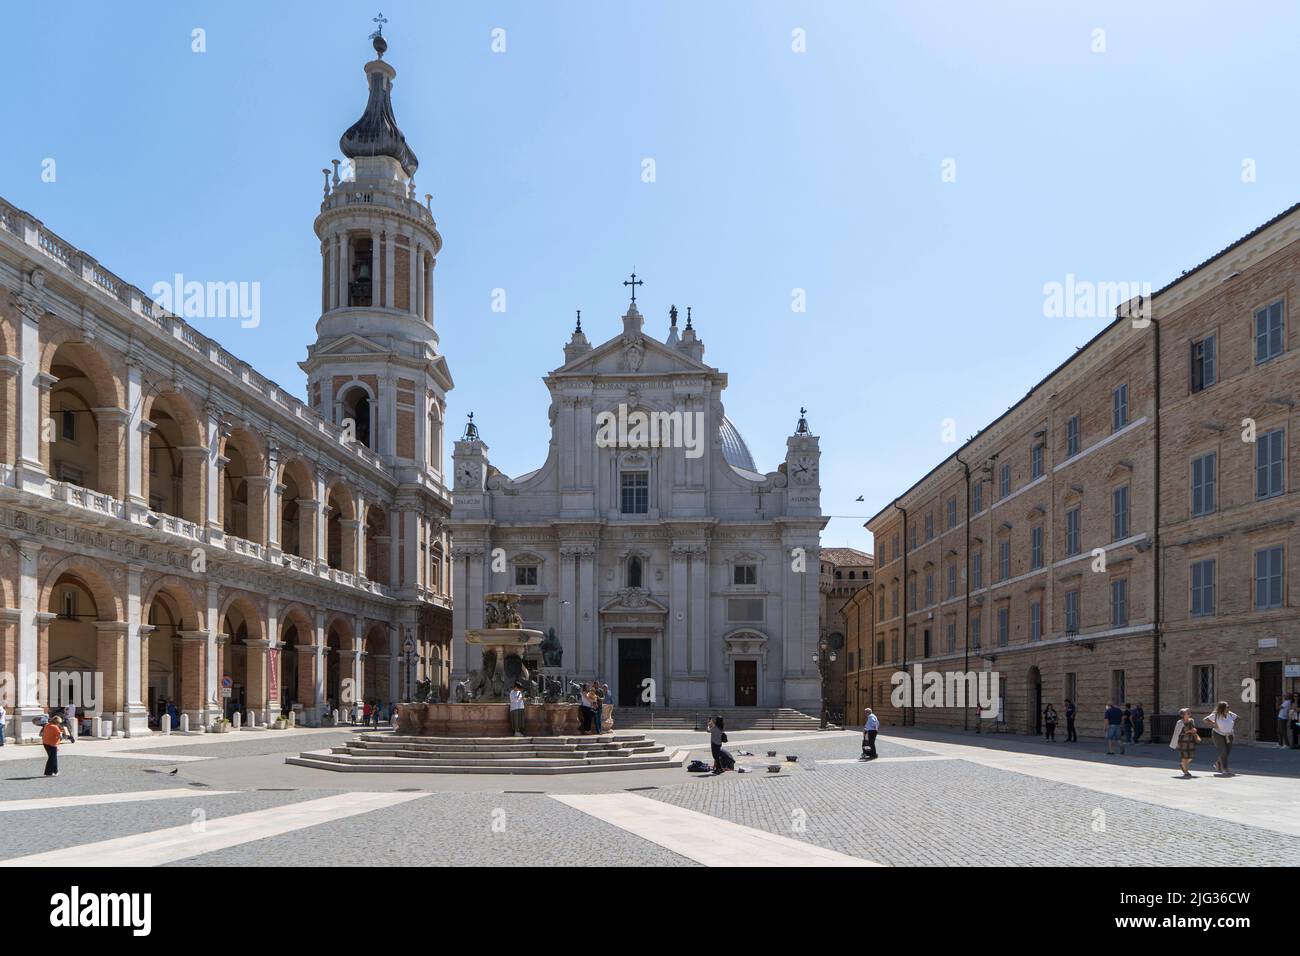 Piazza della Madonna square, Sanctuary of Madonna di Loreto, Loreto, Marche, Italy, Europe Stock Photo